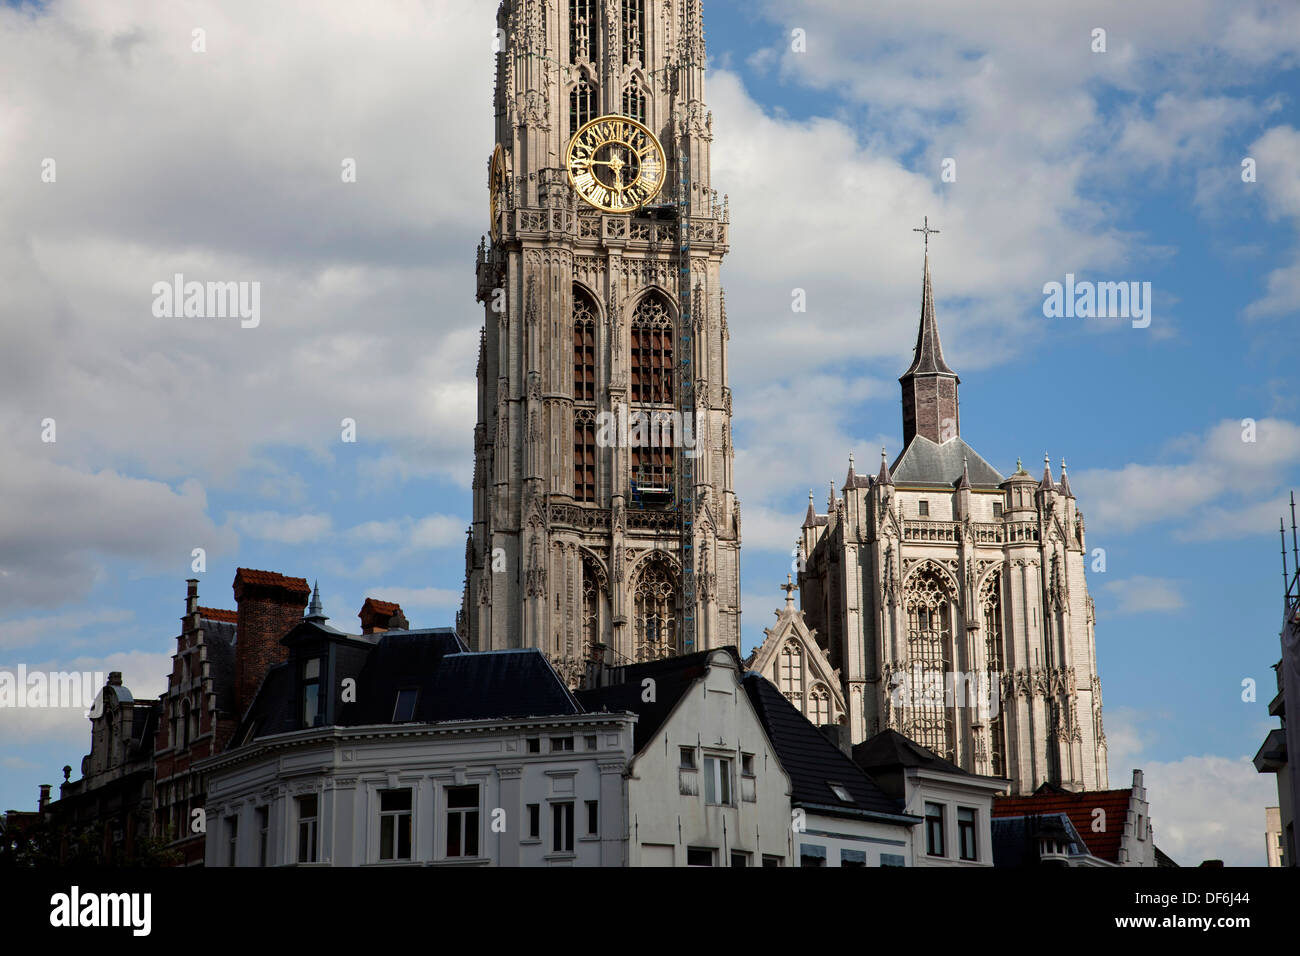 Kirche, Turm von der Onze-Lieve-Vrouwekathedraal (Kathedrale unserer lieben Frau) in Antwerpen, Belgien Stockfoto